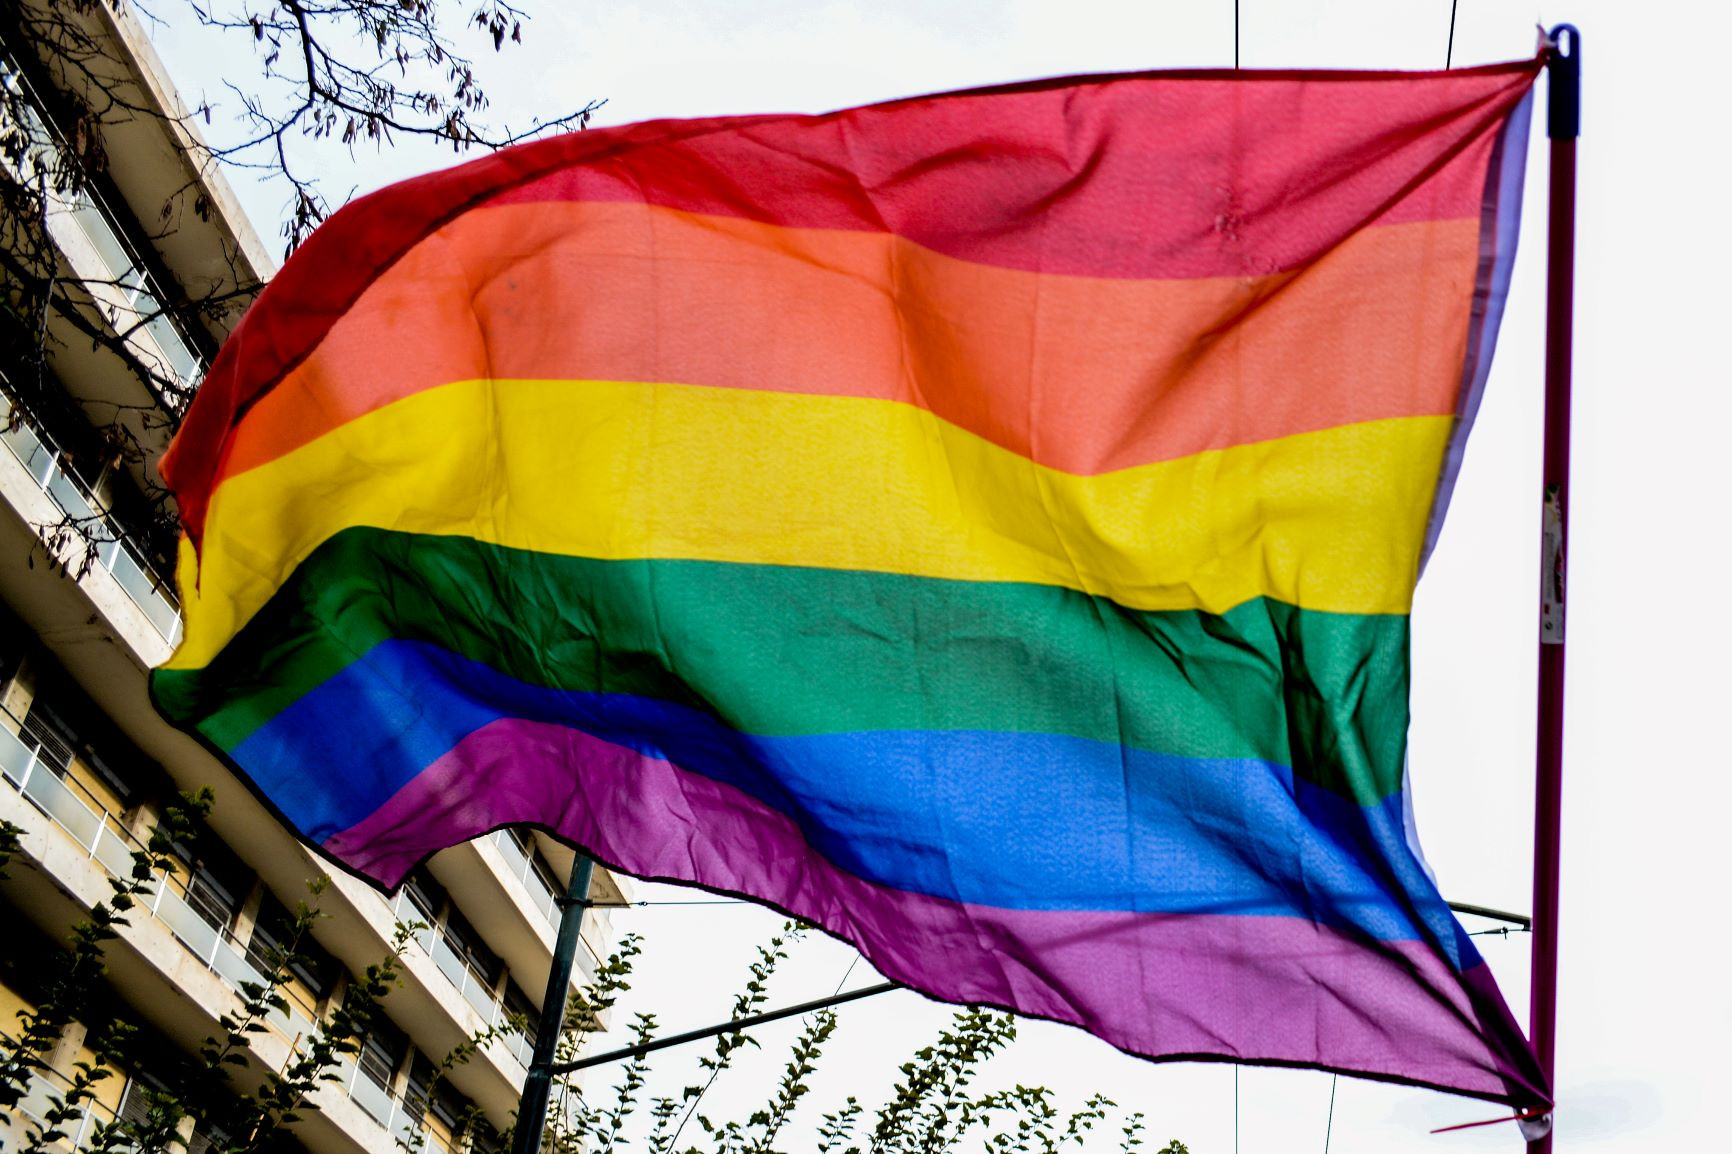 «Θεραπείες μεταστροφής»: Έρευνα για τις πρακτικές βίας σε ΛΟΑΤΚΙ+ άτομα – «Μου έλεγε να επισκέπτομαι οίκους ανοχής»